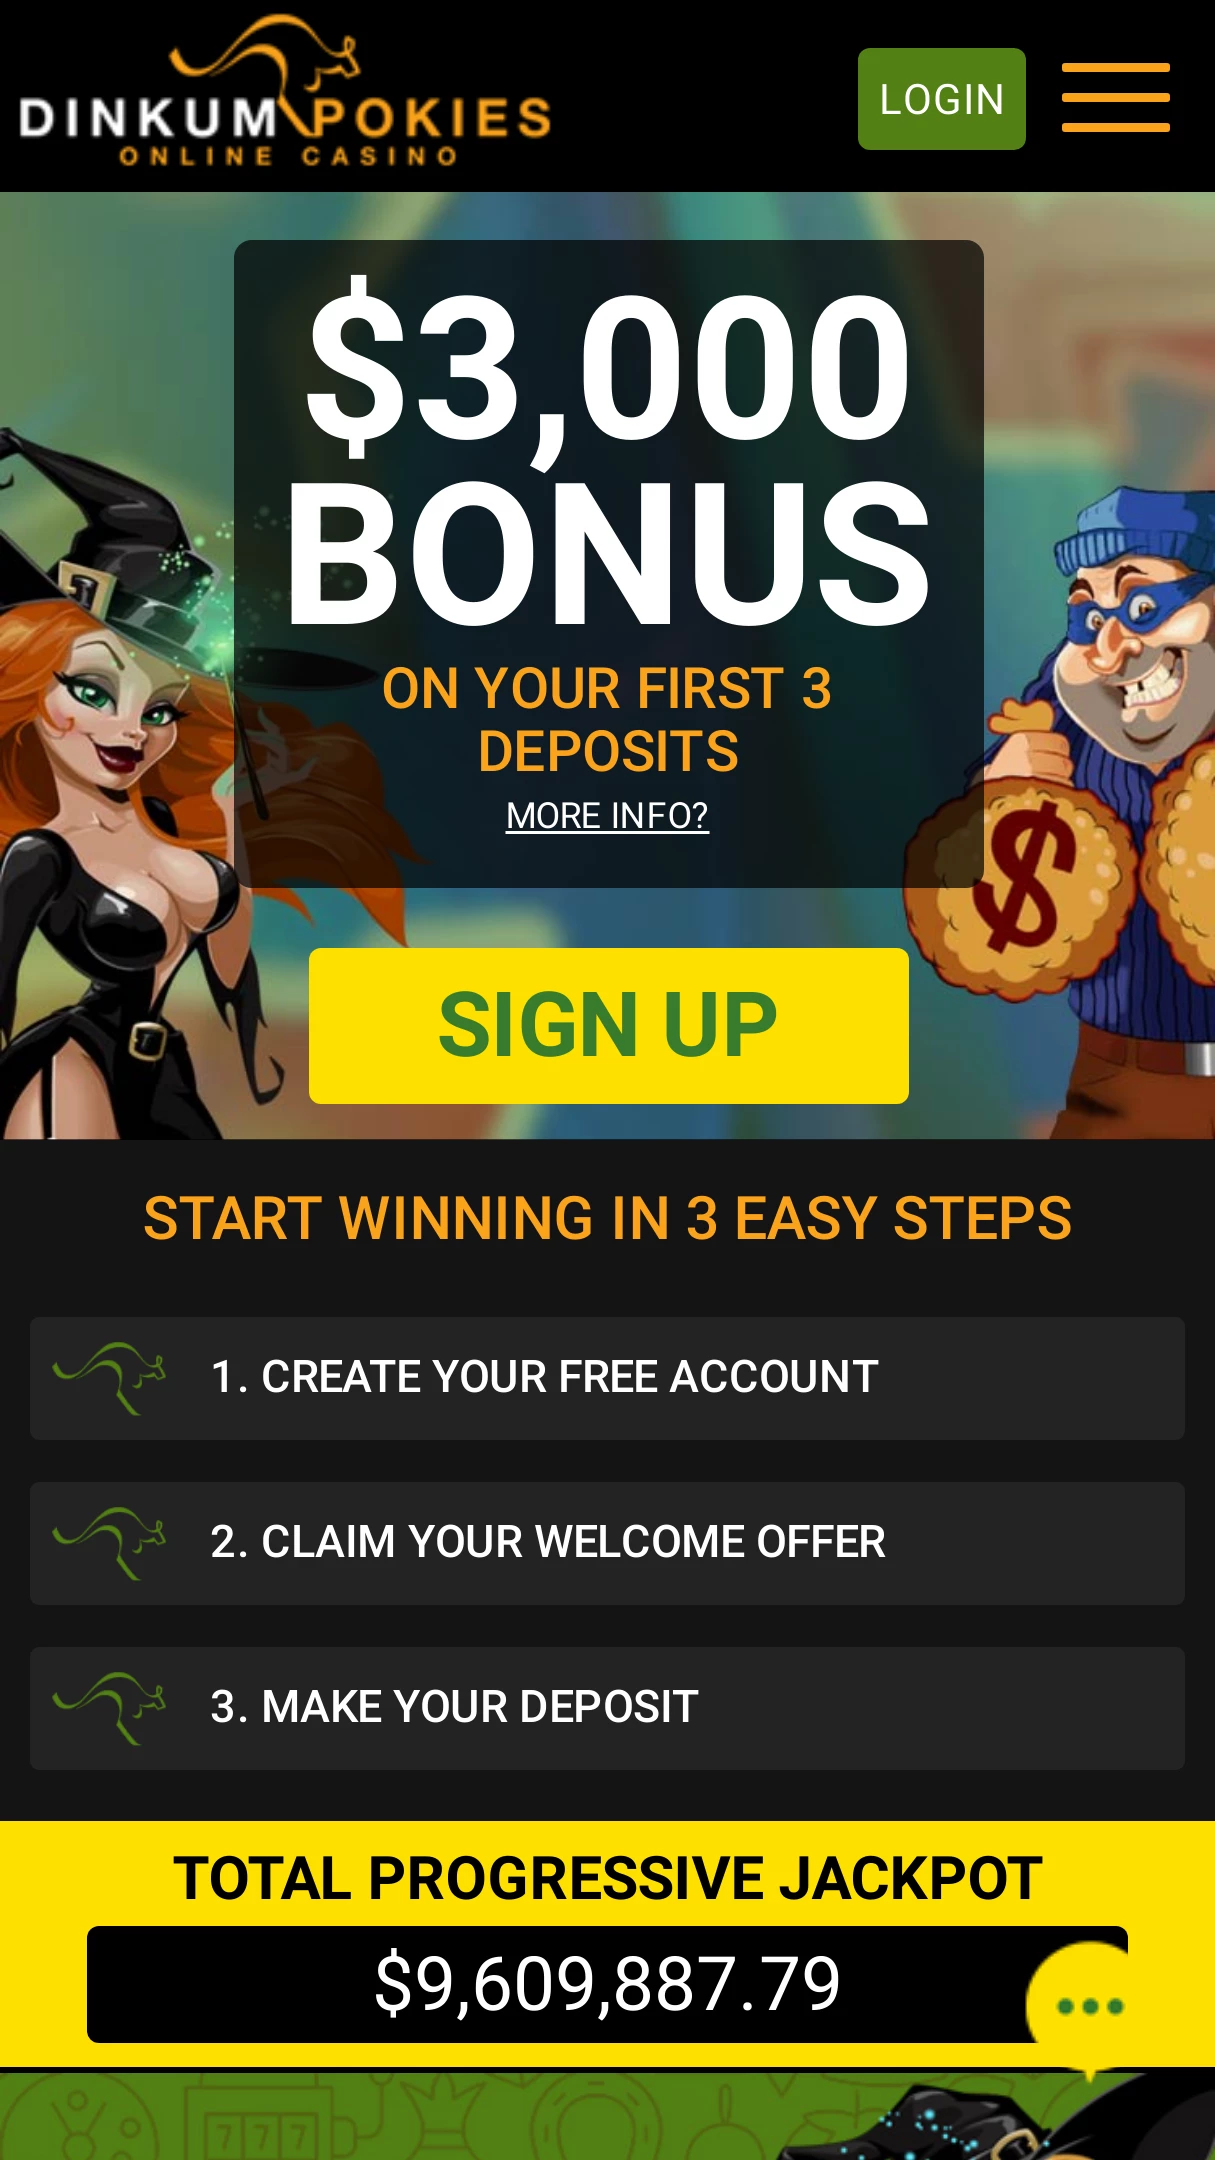 Dinkum pokies casino bonus codes